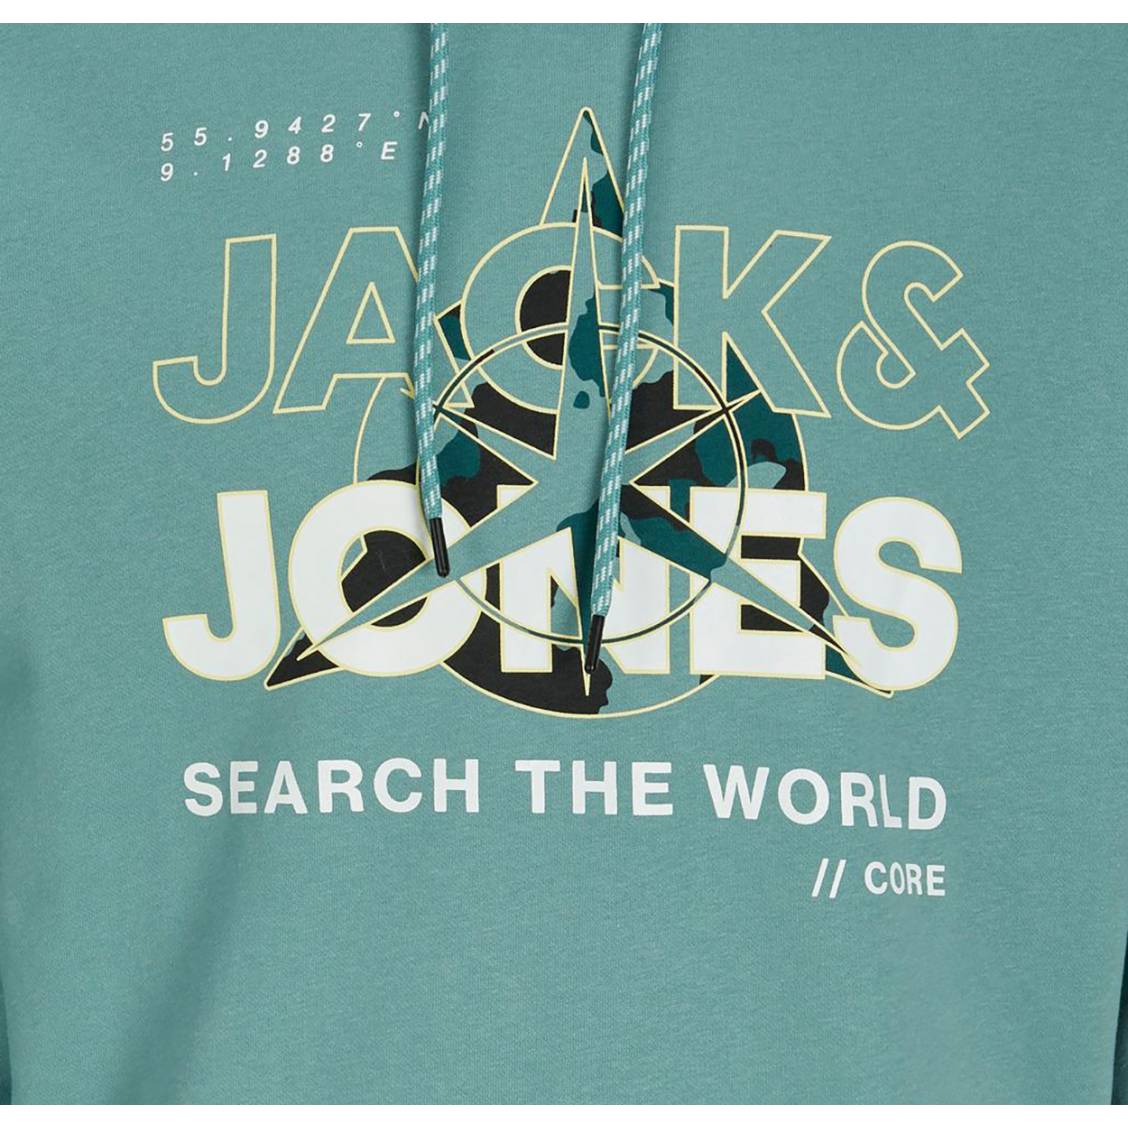 Sweat à capuche grande taille Jack & Jones gris chiné avec grand logo